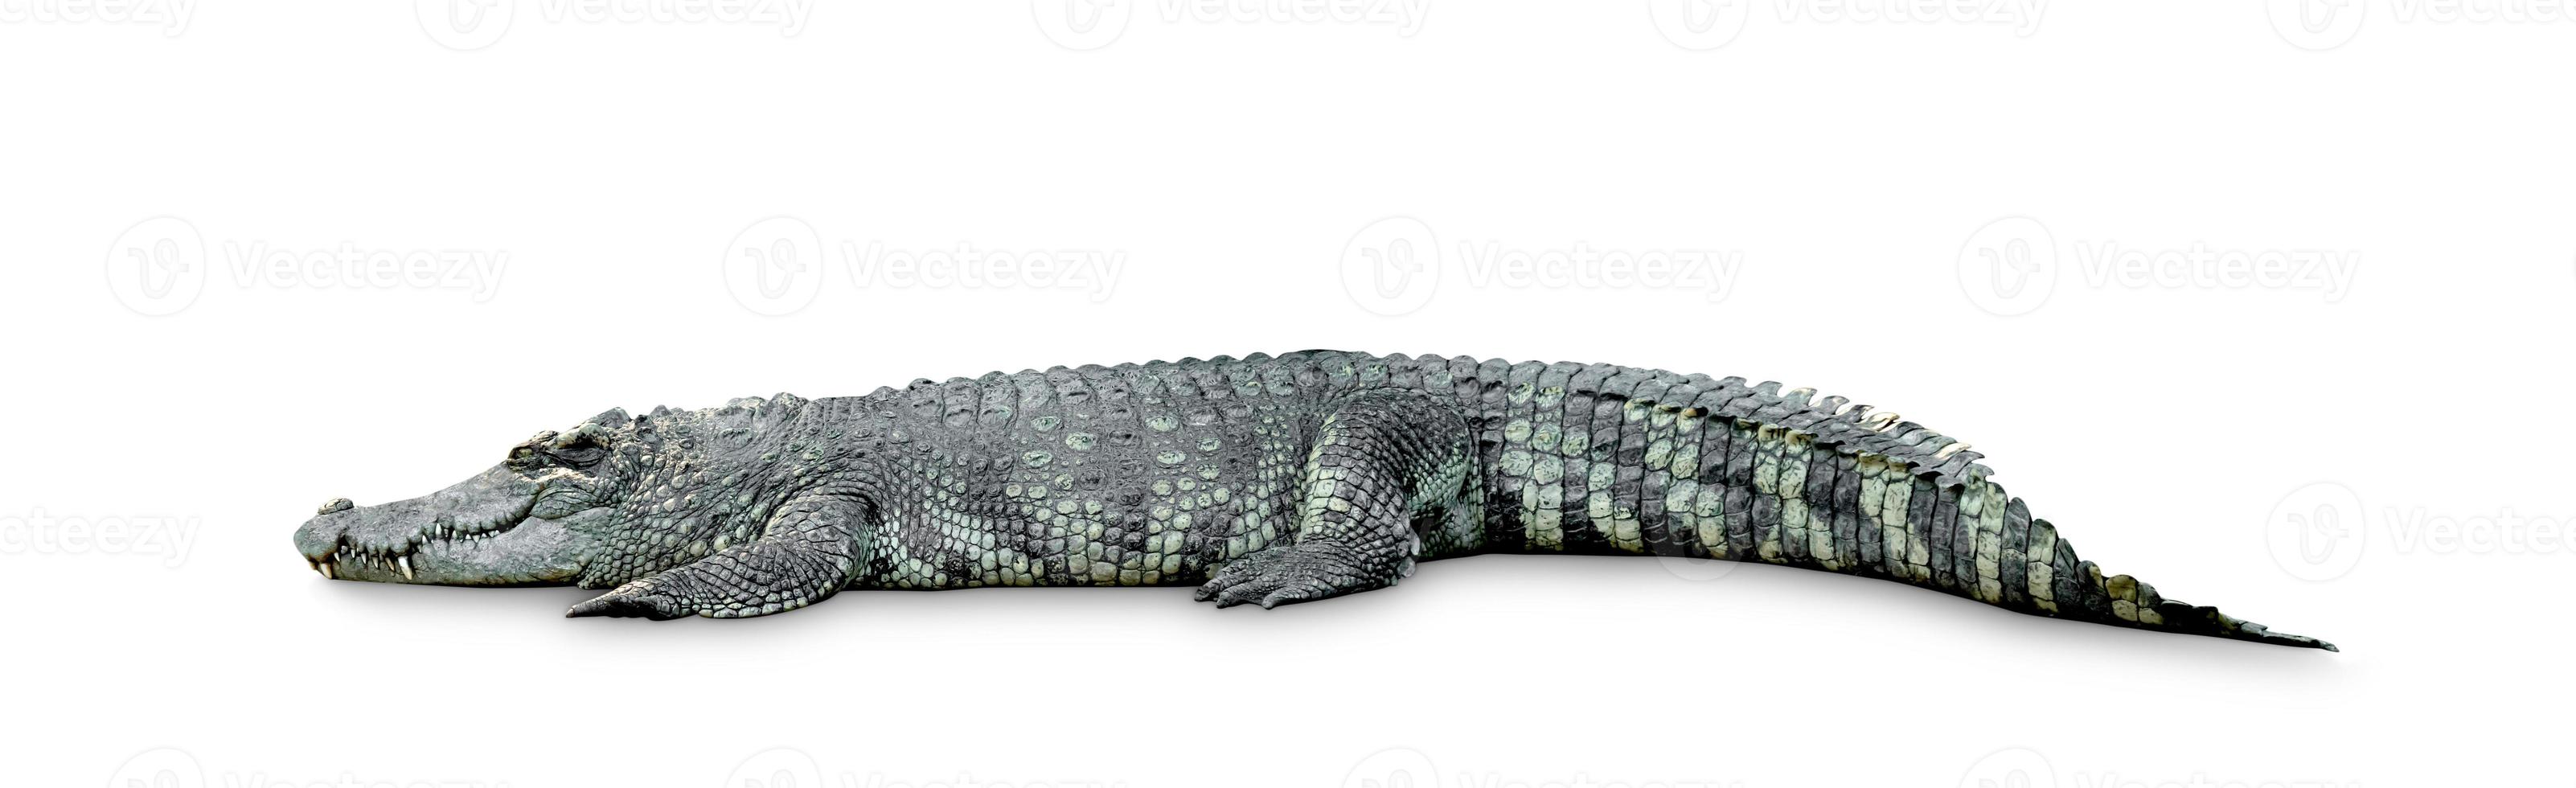 krokodil isolerad på vit bakgrund, inkluderar urklippsbana foto